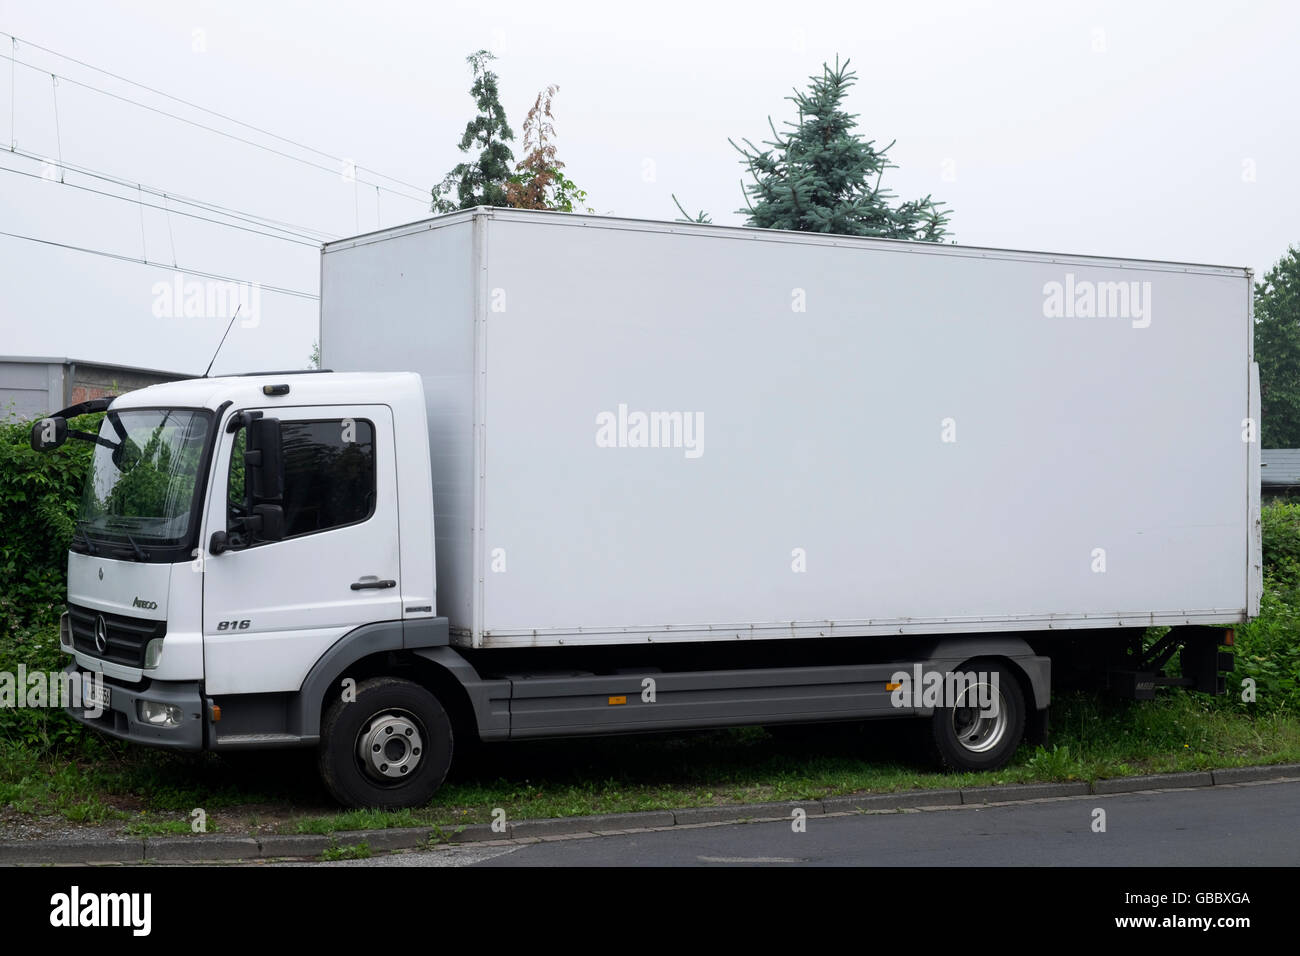 Mercedes benz atego fotografías e imágenes de alta resolución - Alamy